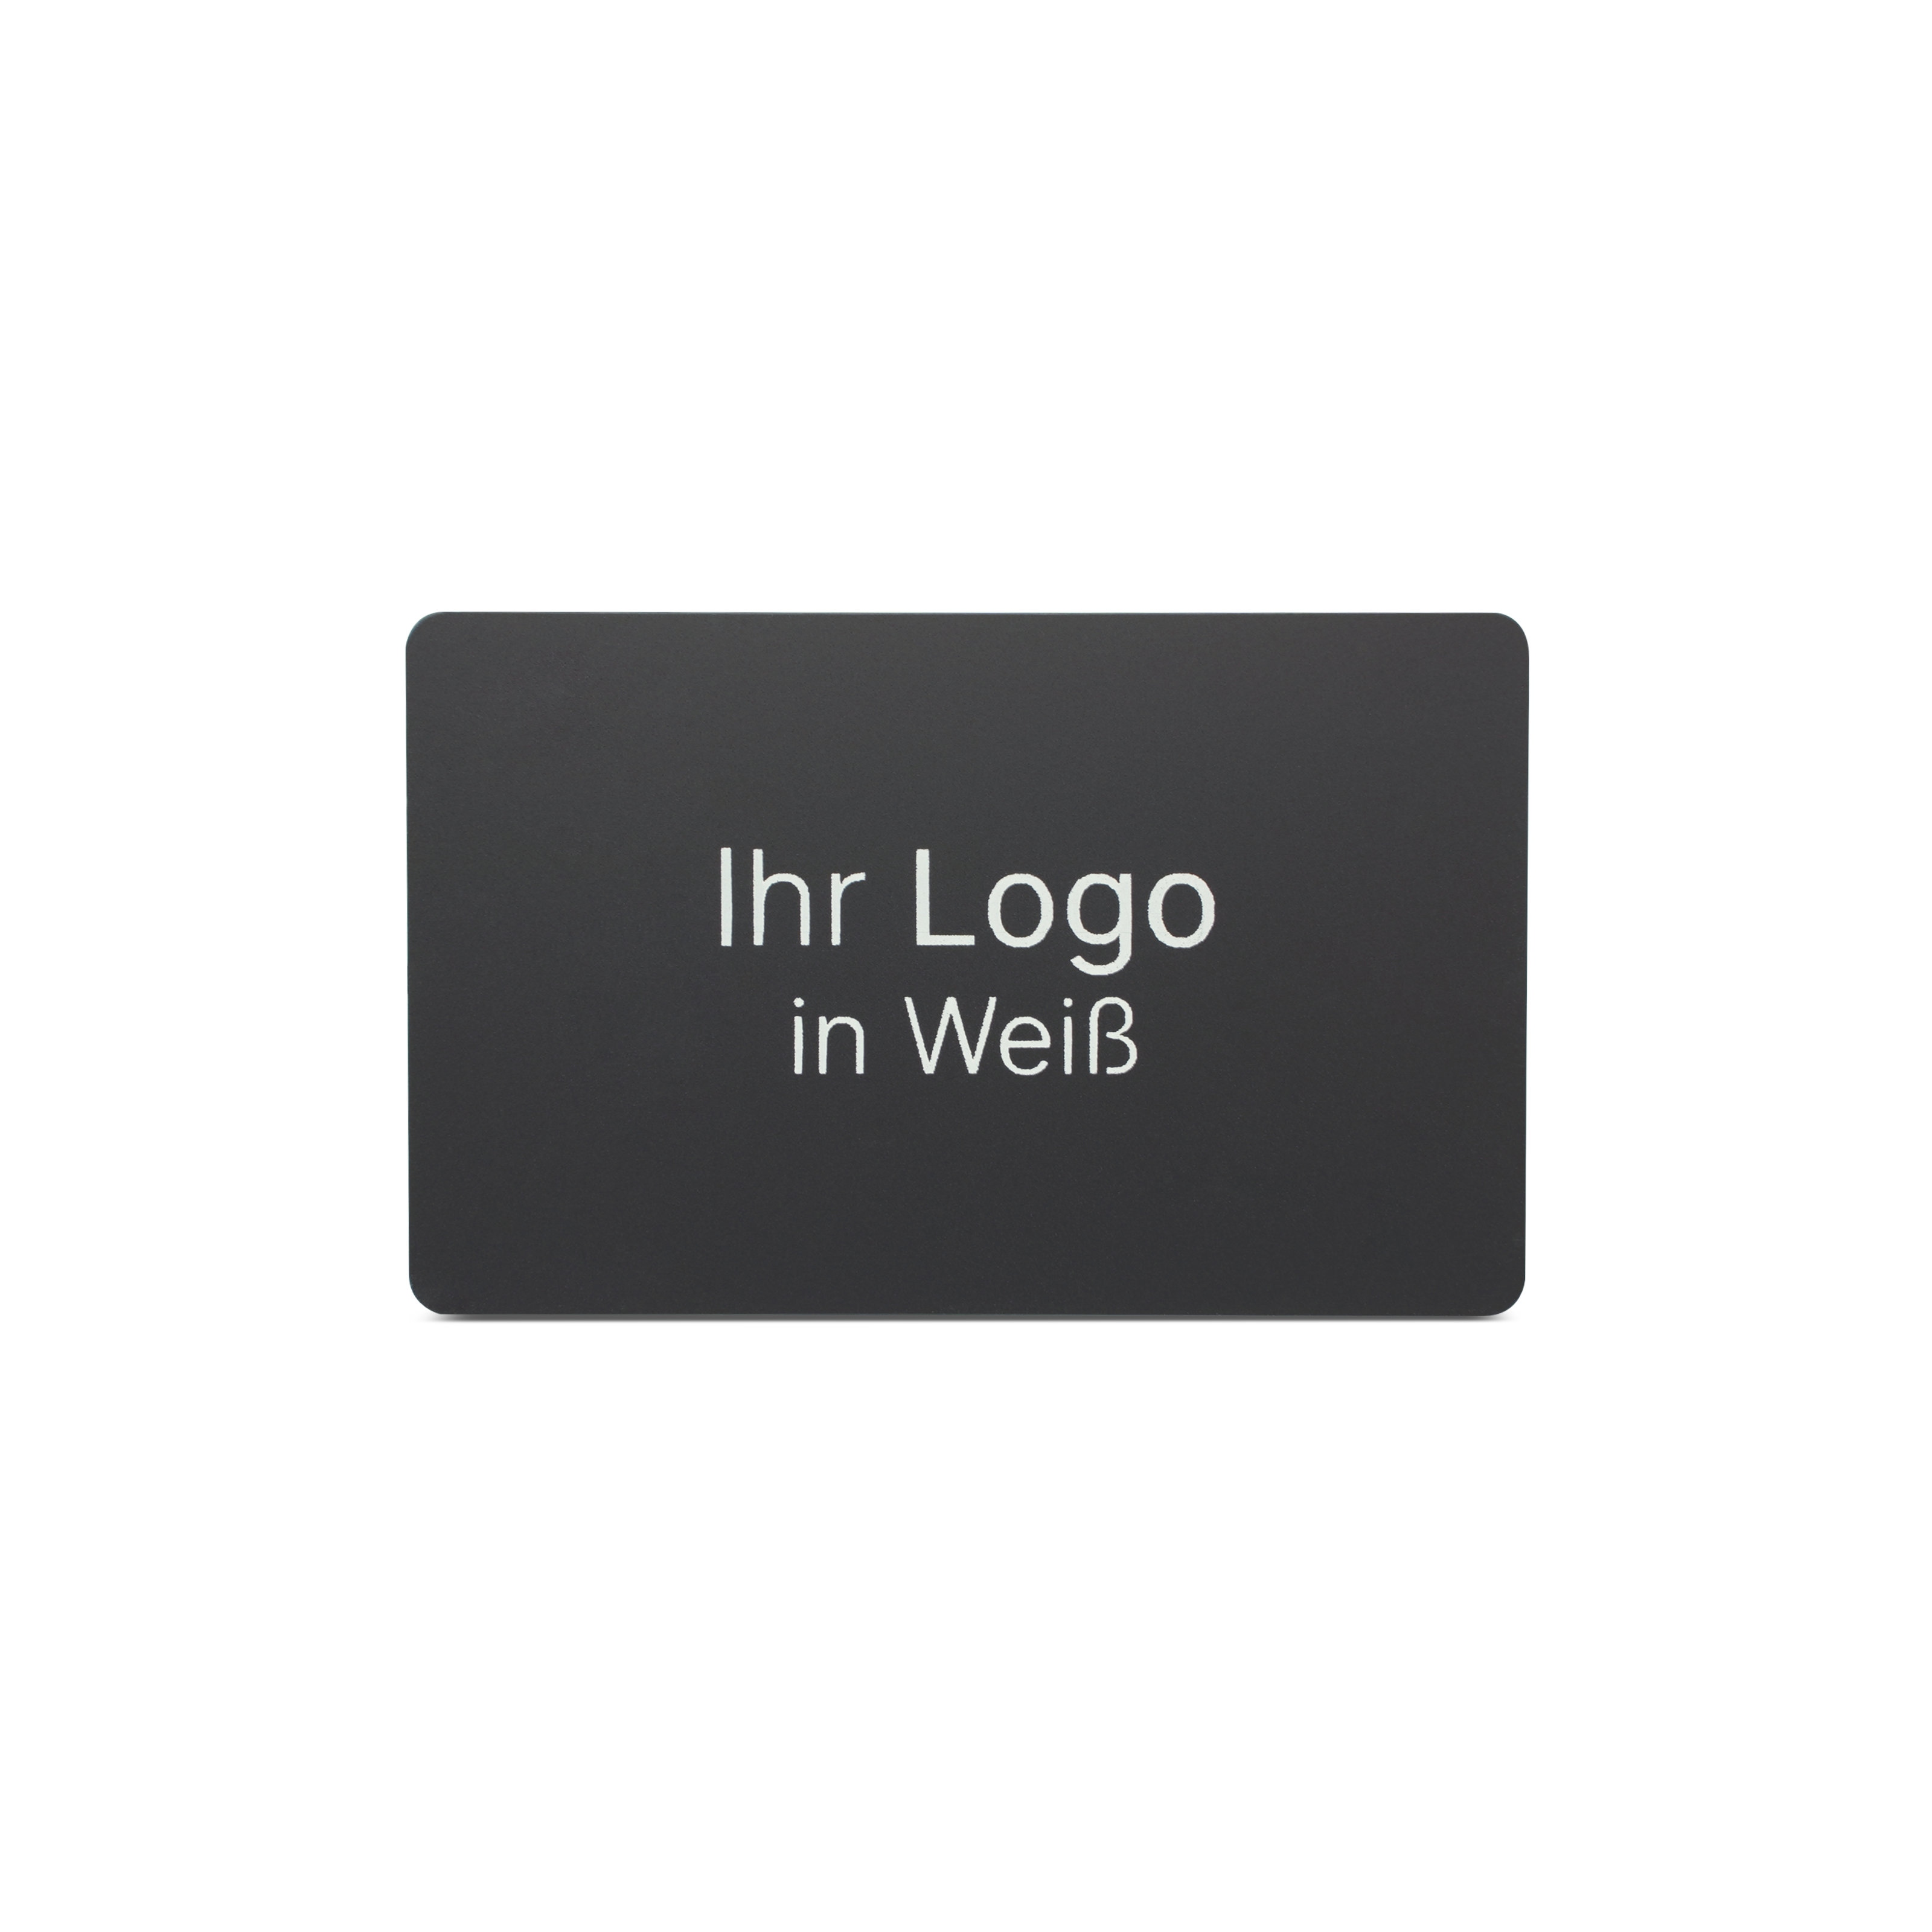 Schwarze NFC Karte aus PVC mit Bedruckung "Ihr Logo in Weiß"